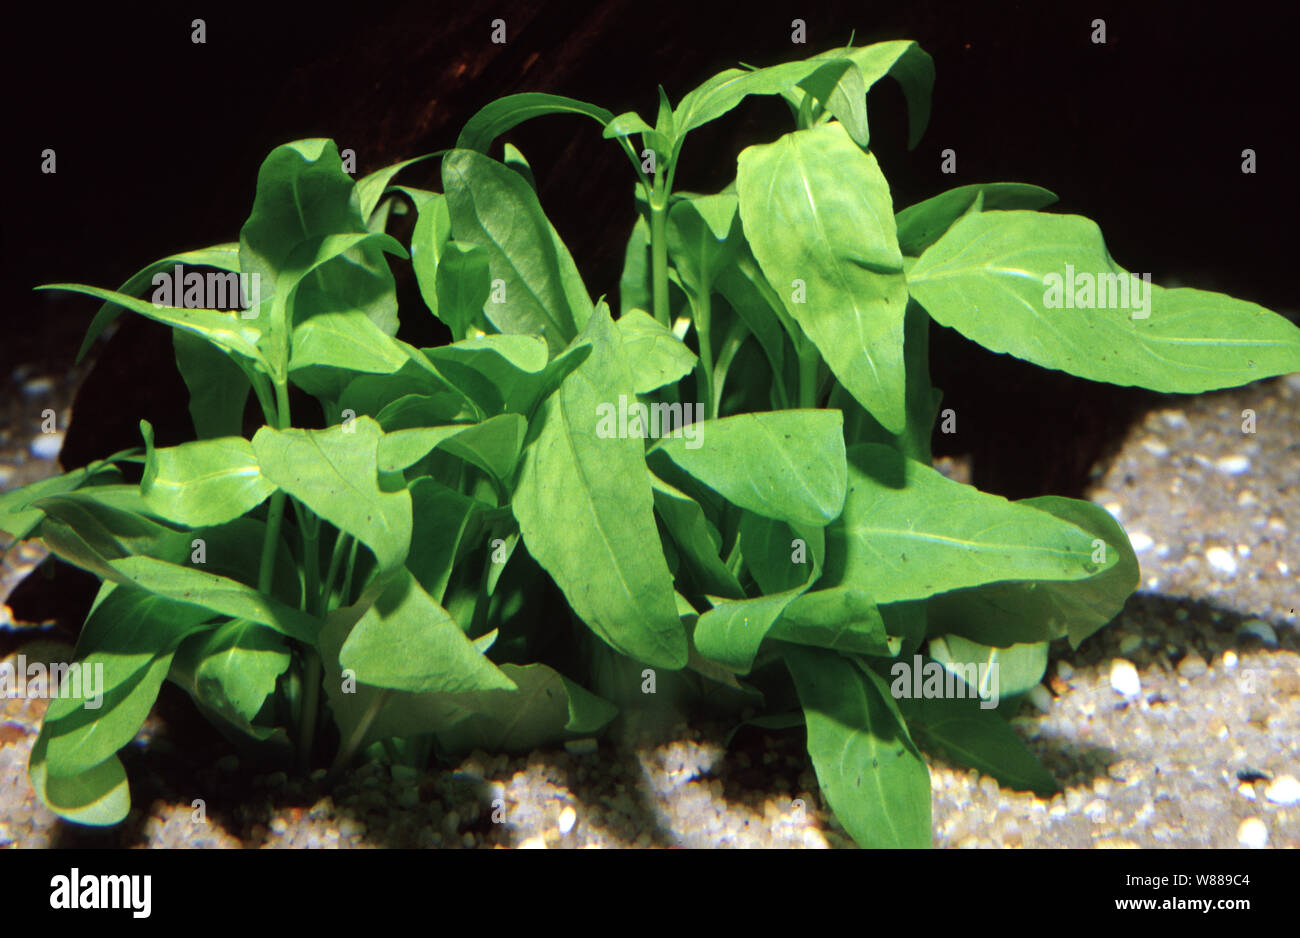 Senegal tea plant, Gymnocoronis spilanthoides Stock Photo